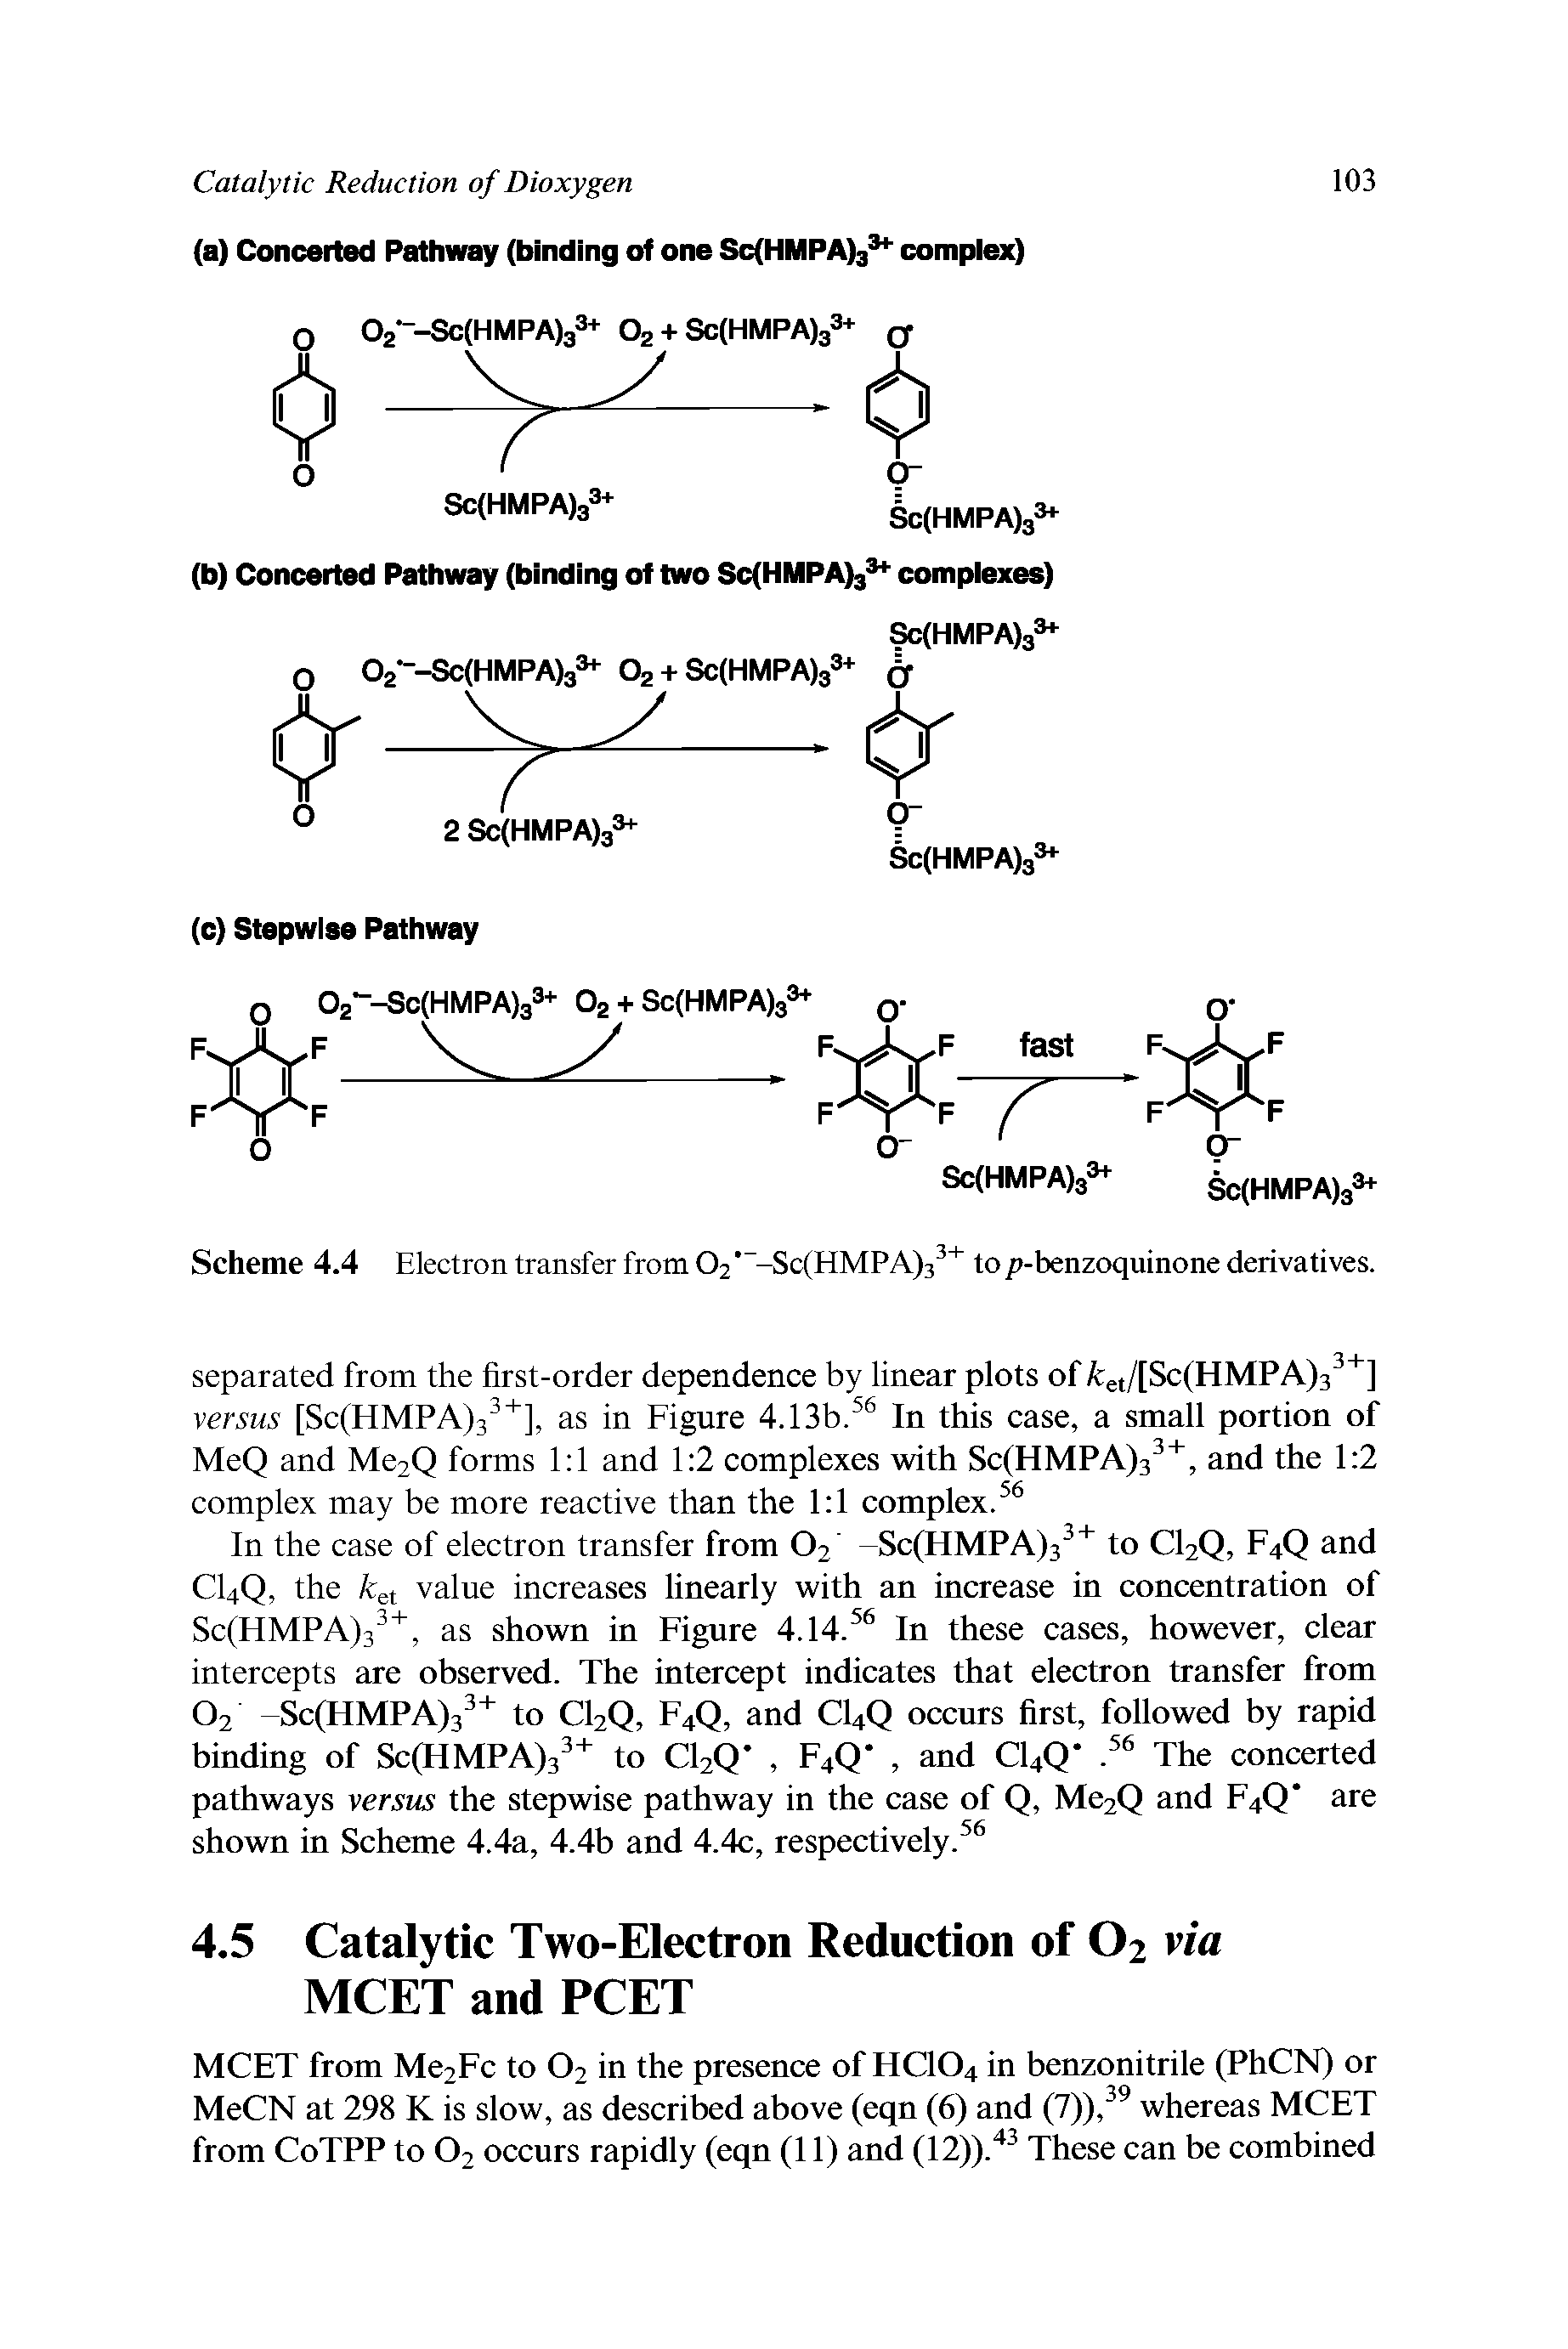 Scheme 4.4 Electron transfer from O2 -Sc(HMPA)3 to p-benzoquinone derivatives.